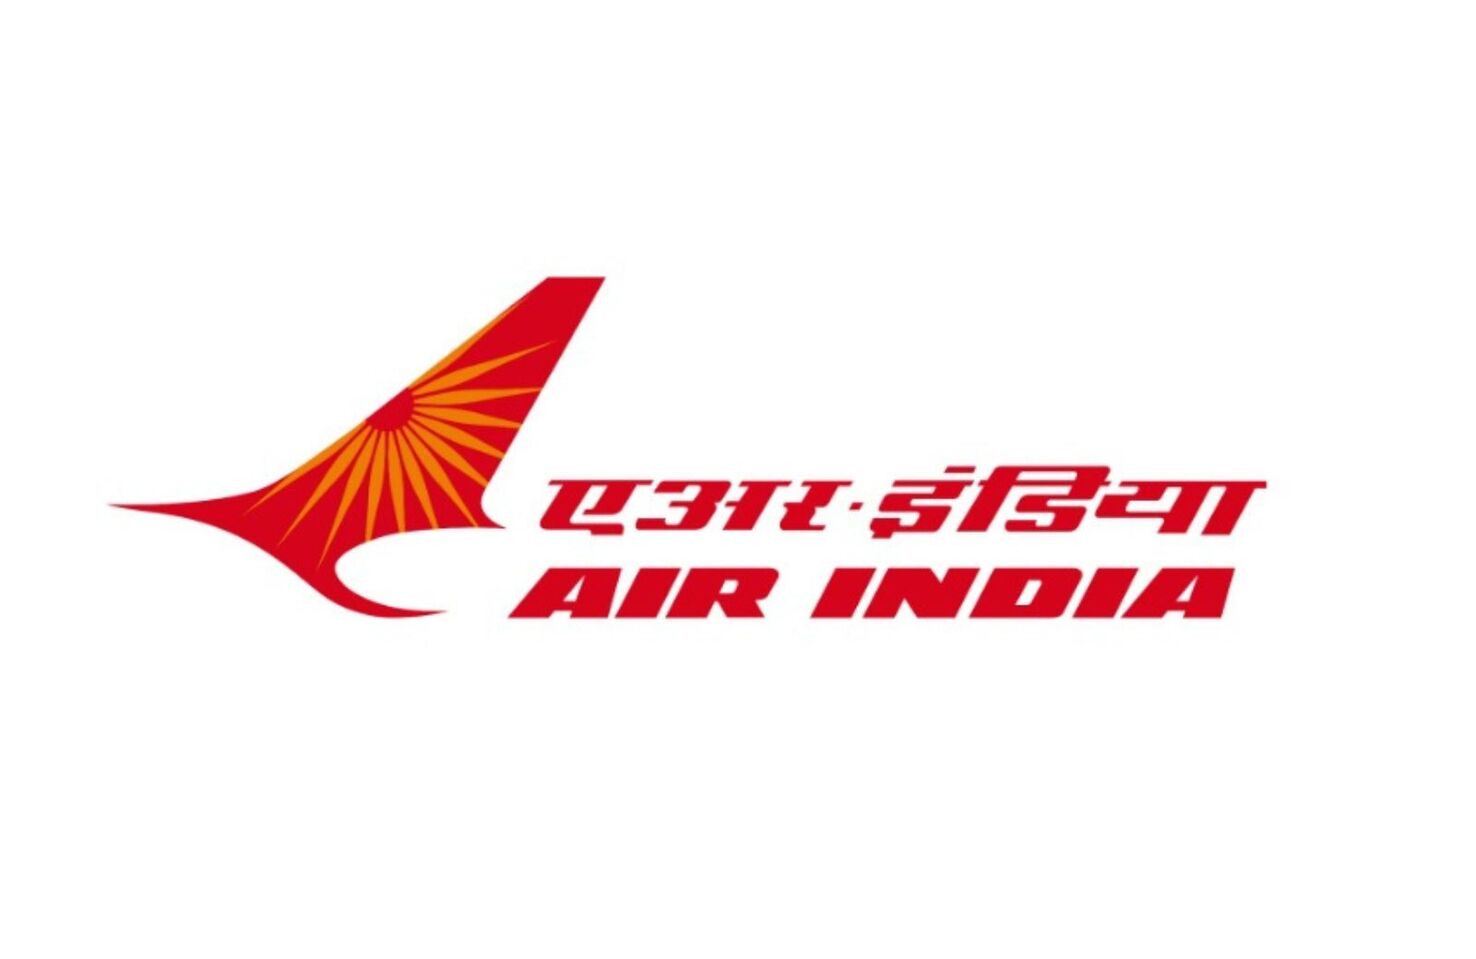 air india old logo.1 0d0dcdb45e6eb89b4dbd7379b0730ab6